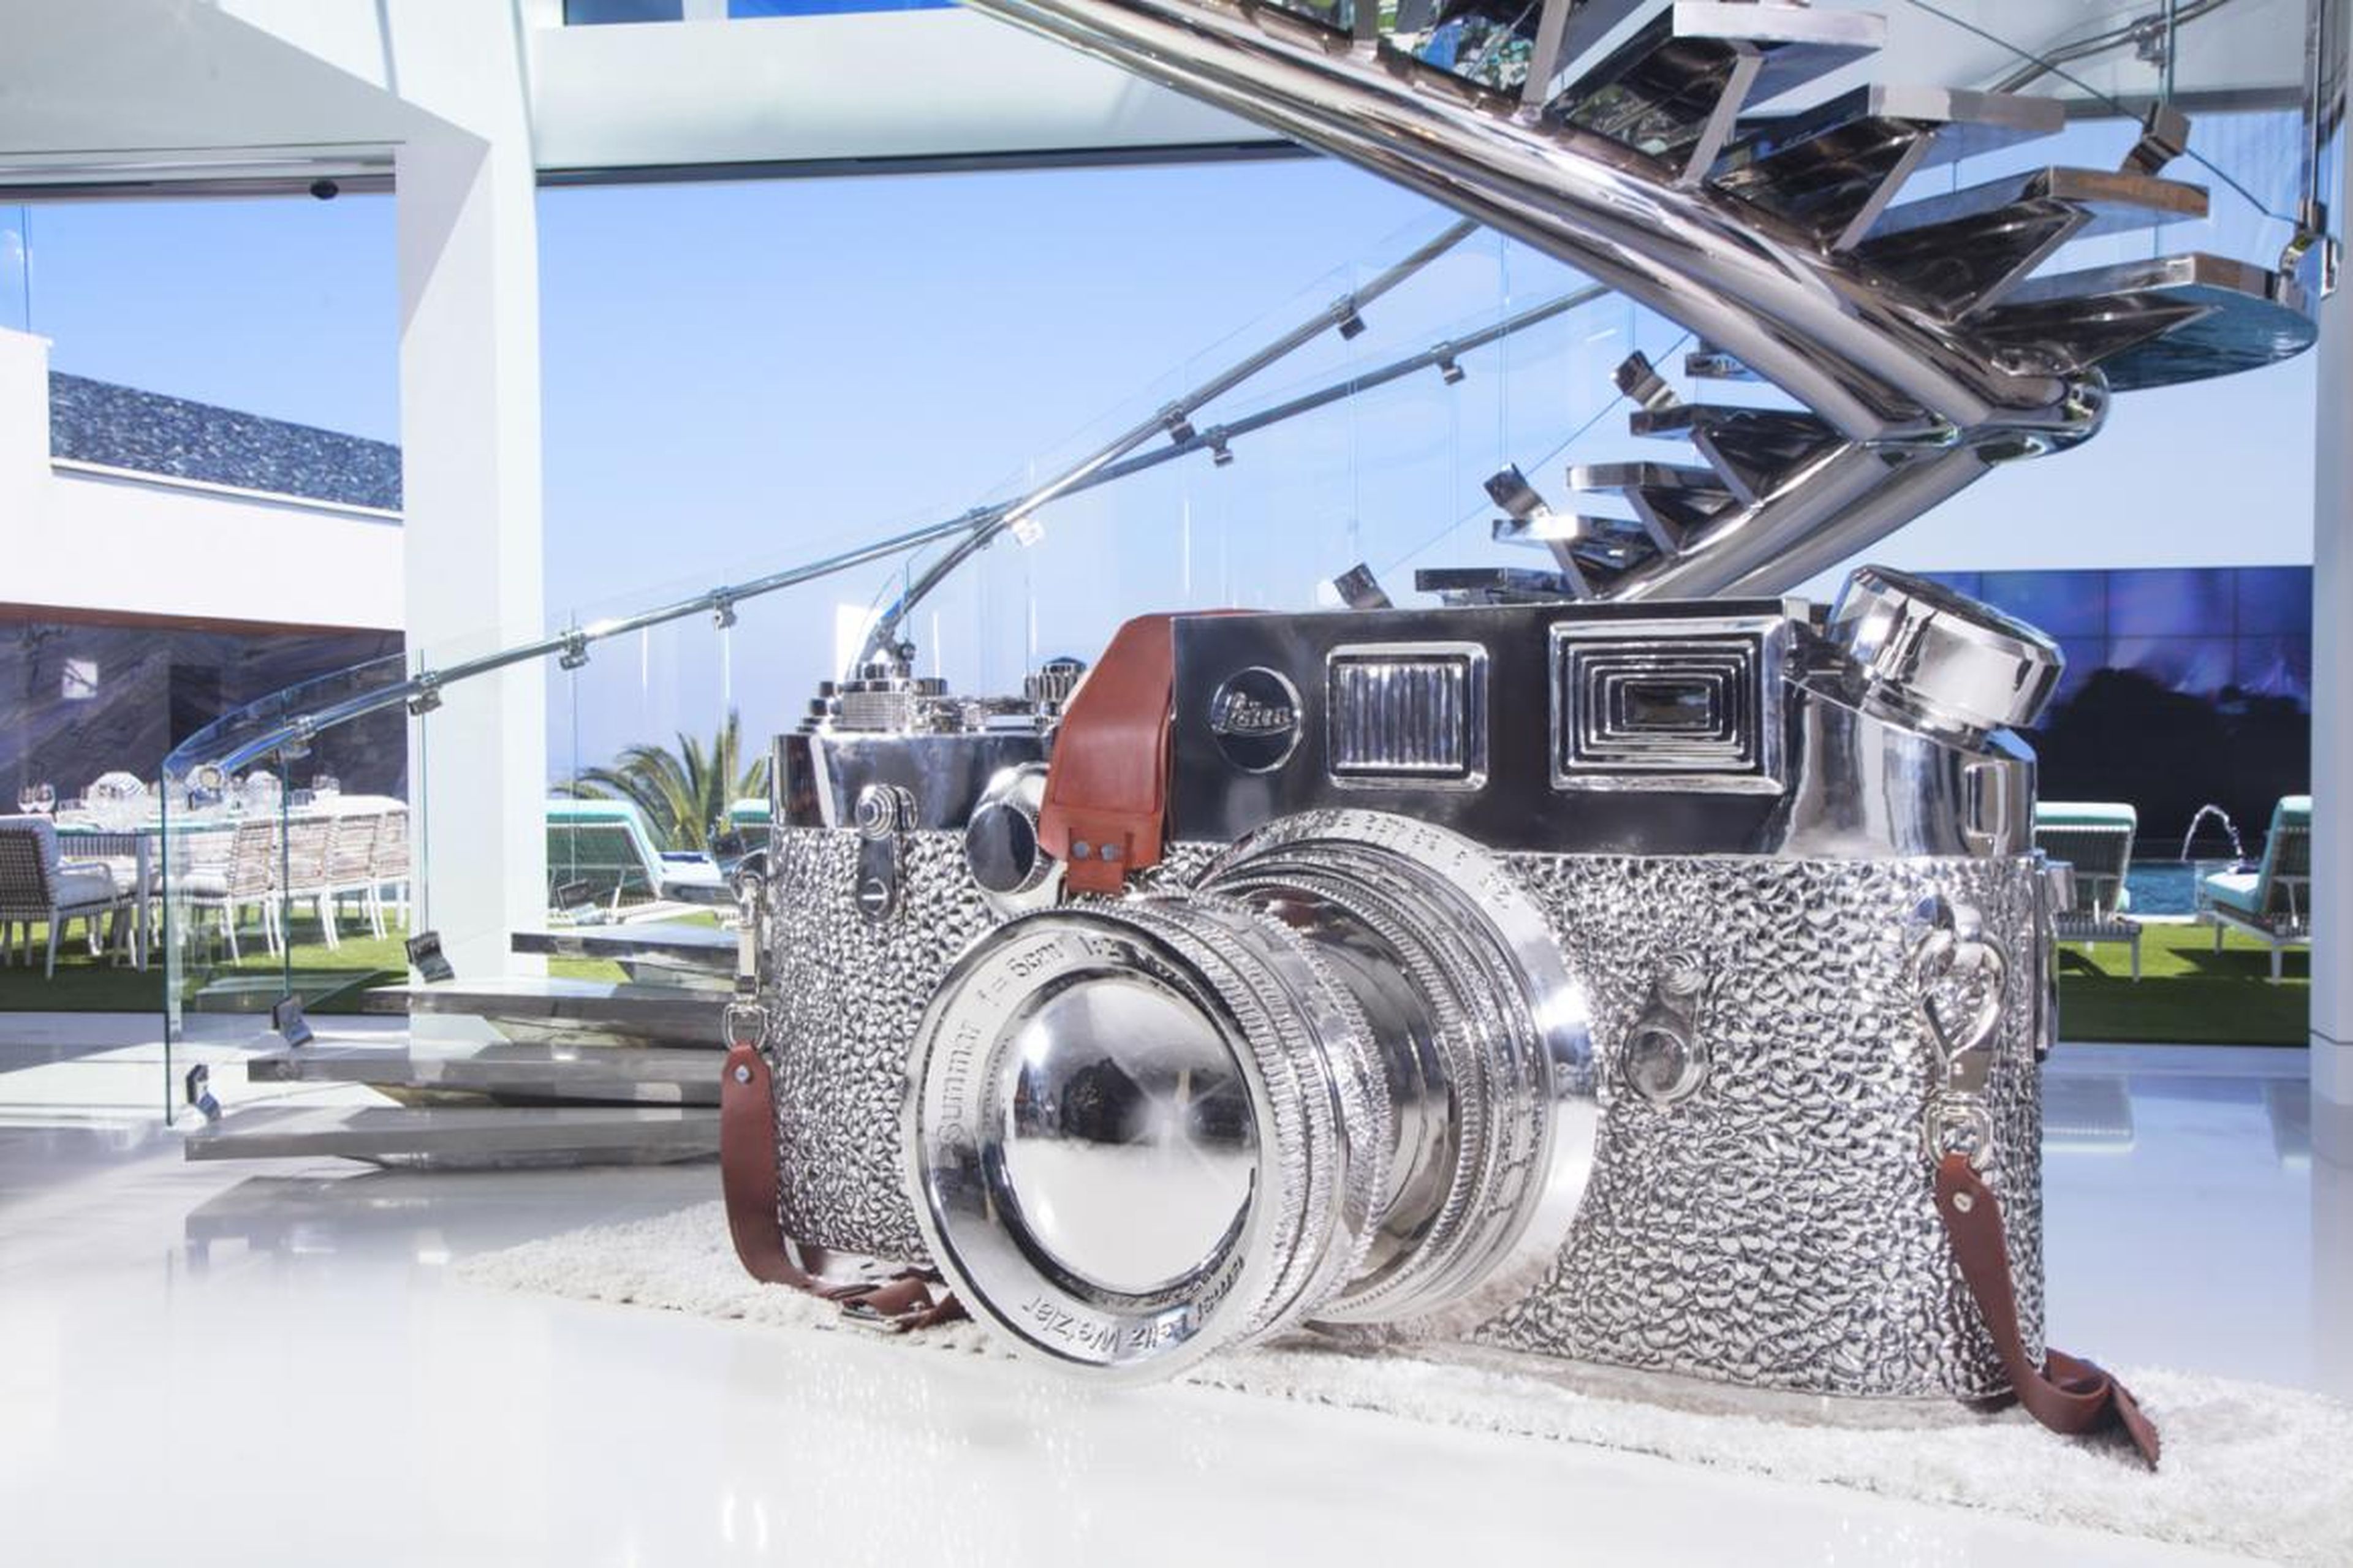 ...una enorme escultura de una cámara Leica que ha sido valorada en un millón de dólares...